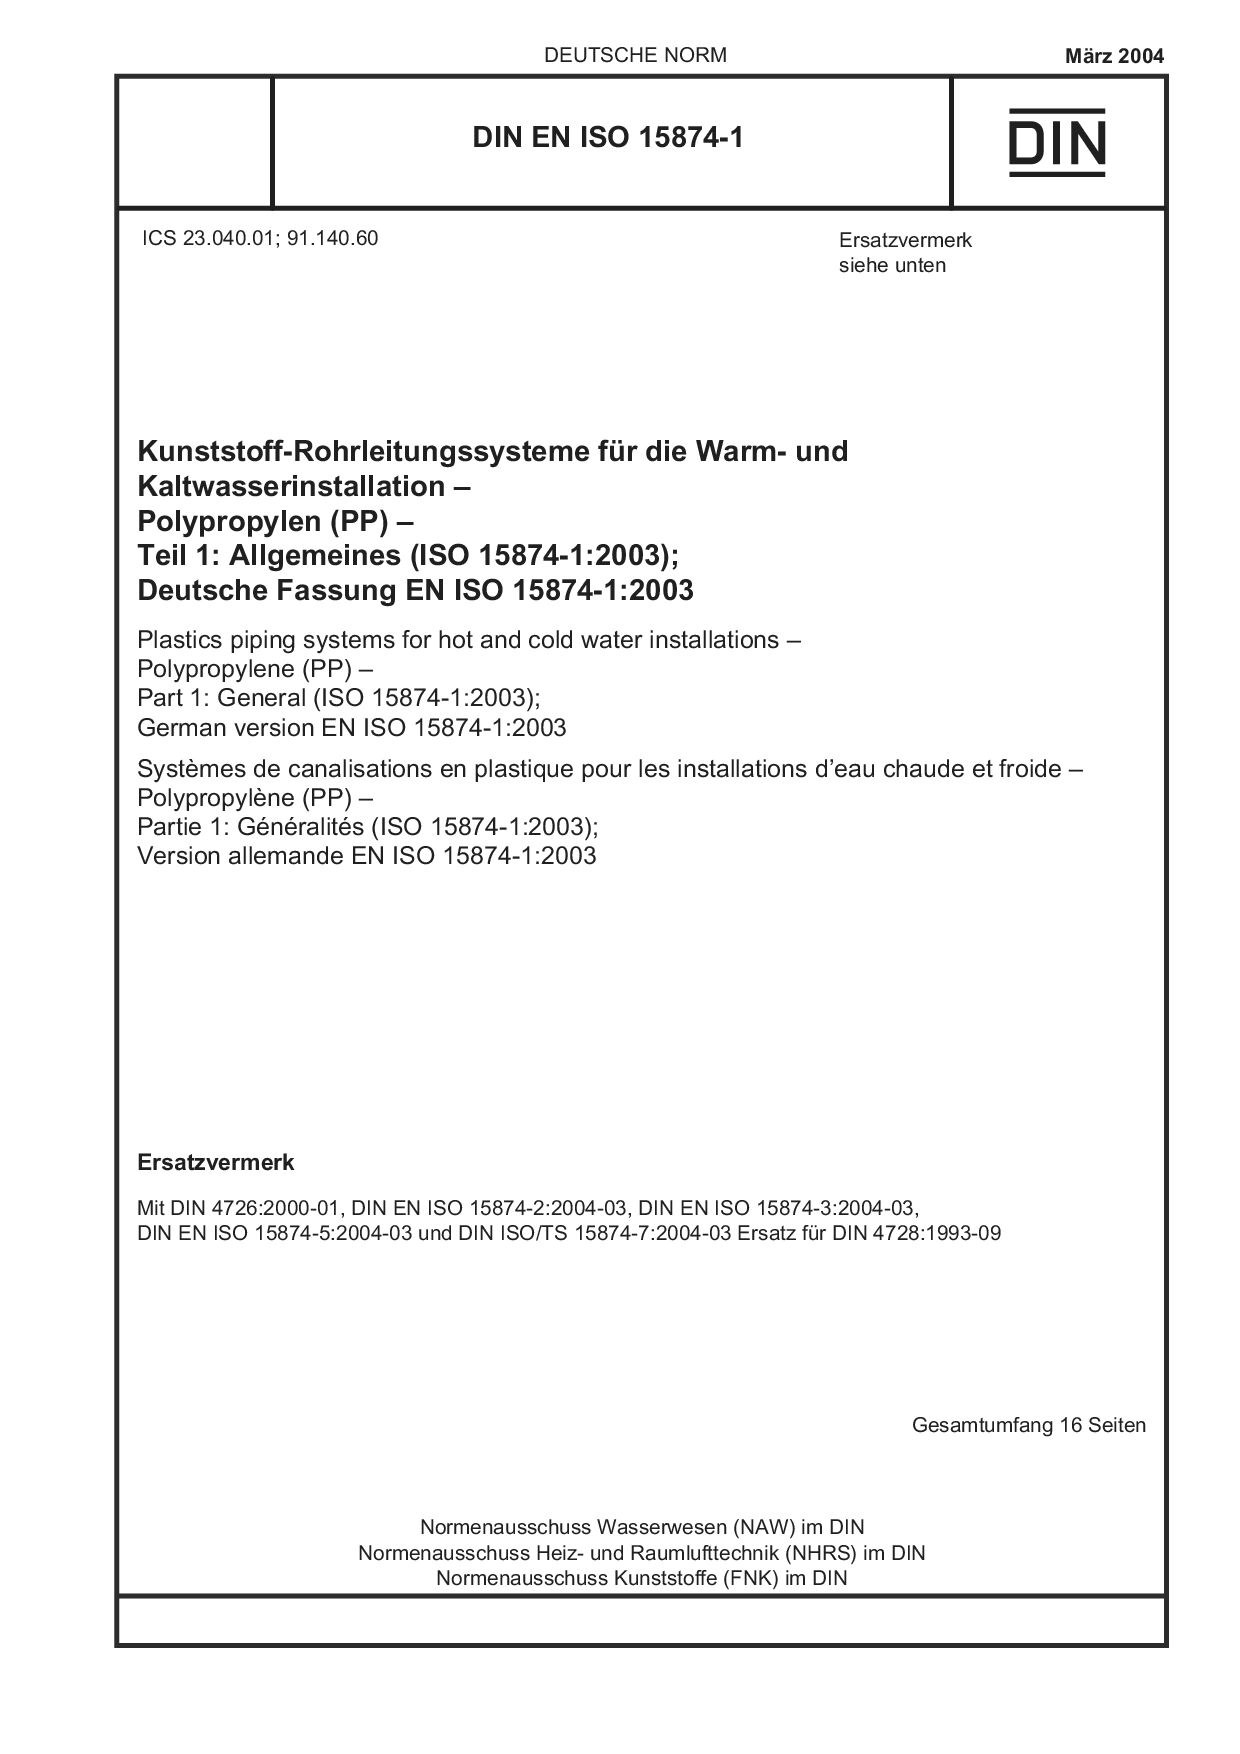 DIN EN ISO 15874-1:2004封面图